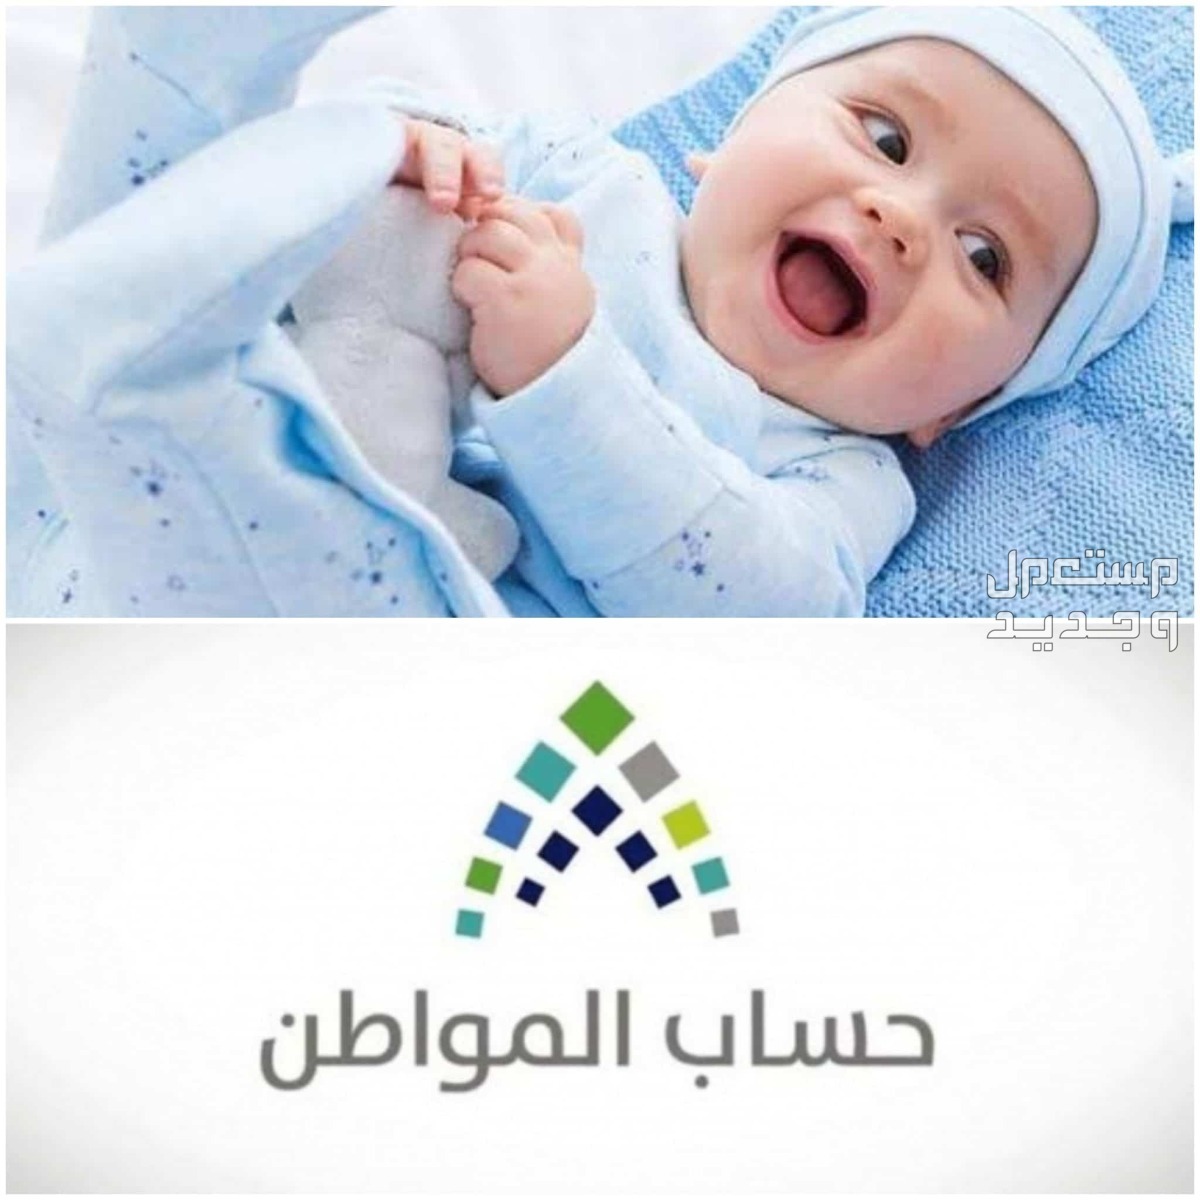 طريقة تسجيل المولود الجديد في حساب المواطن 1445 في قطر تسجيل المولود الجديد في حساب المواطن